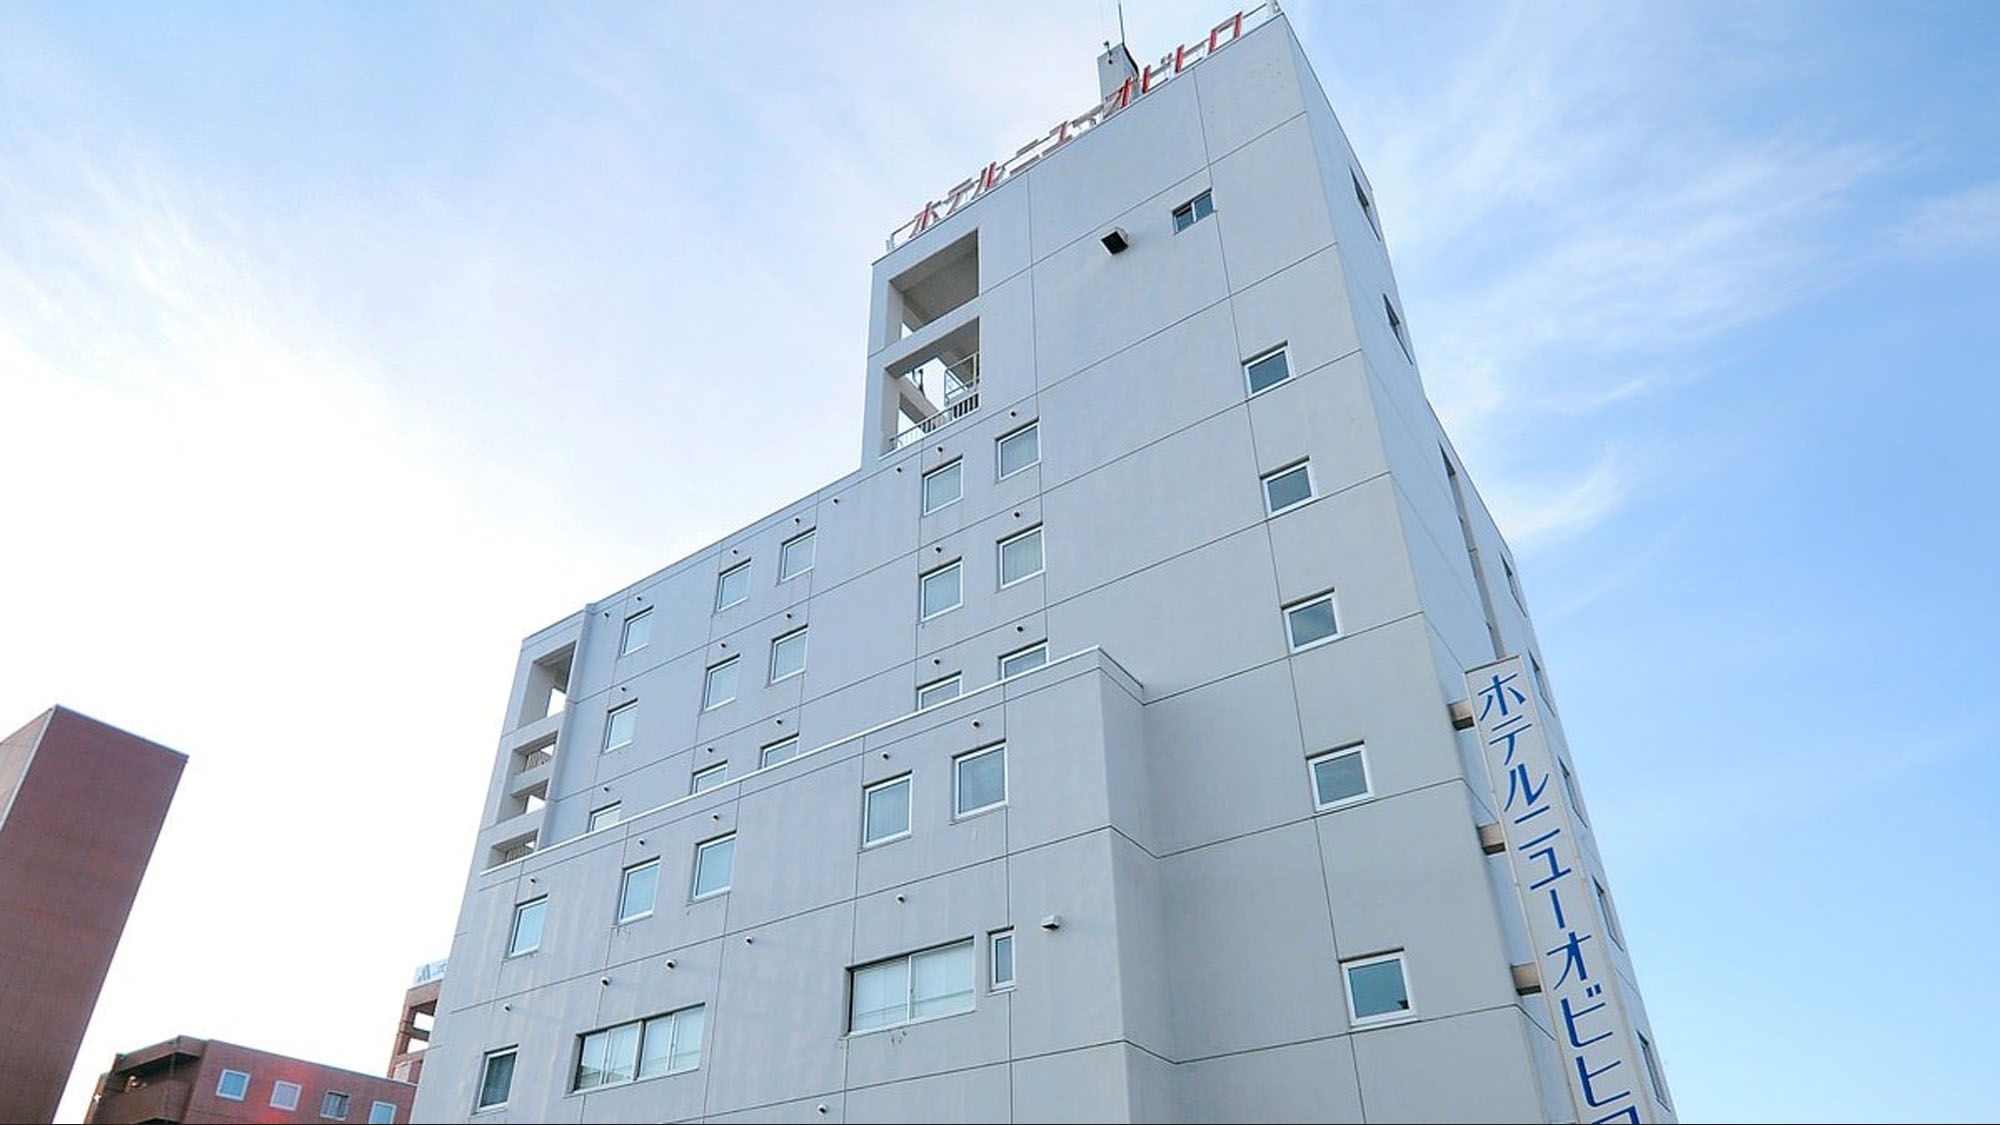 Hotel New Obihiro